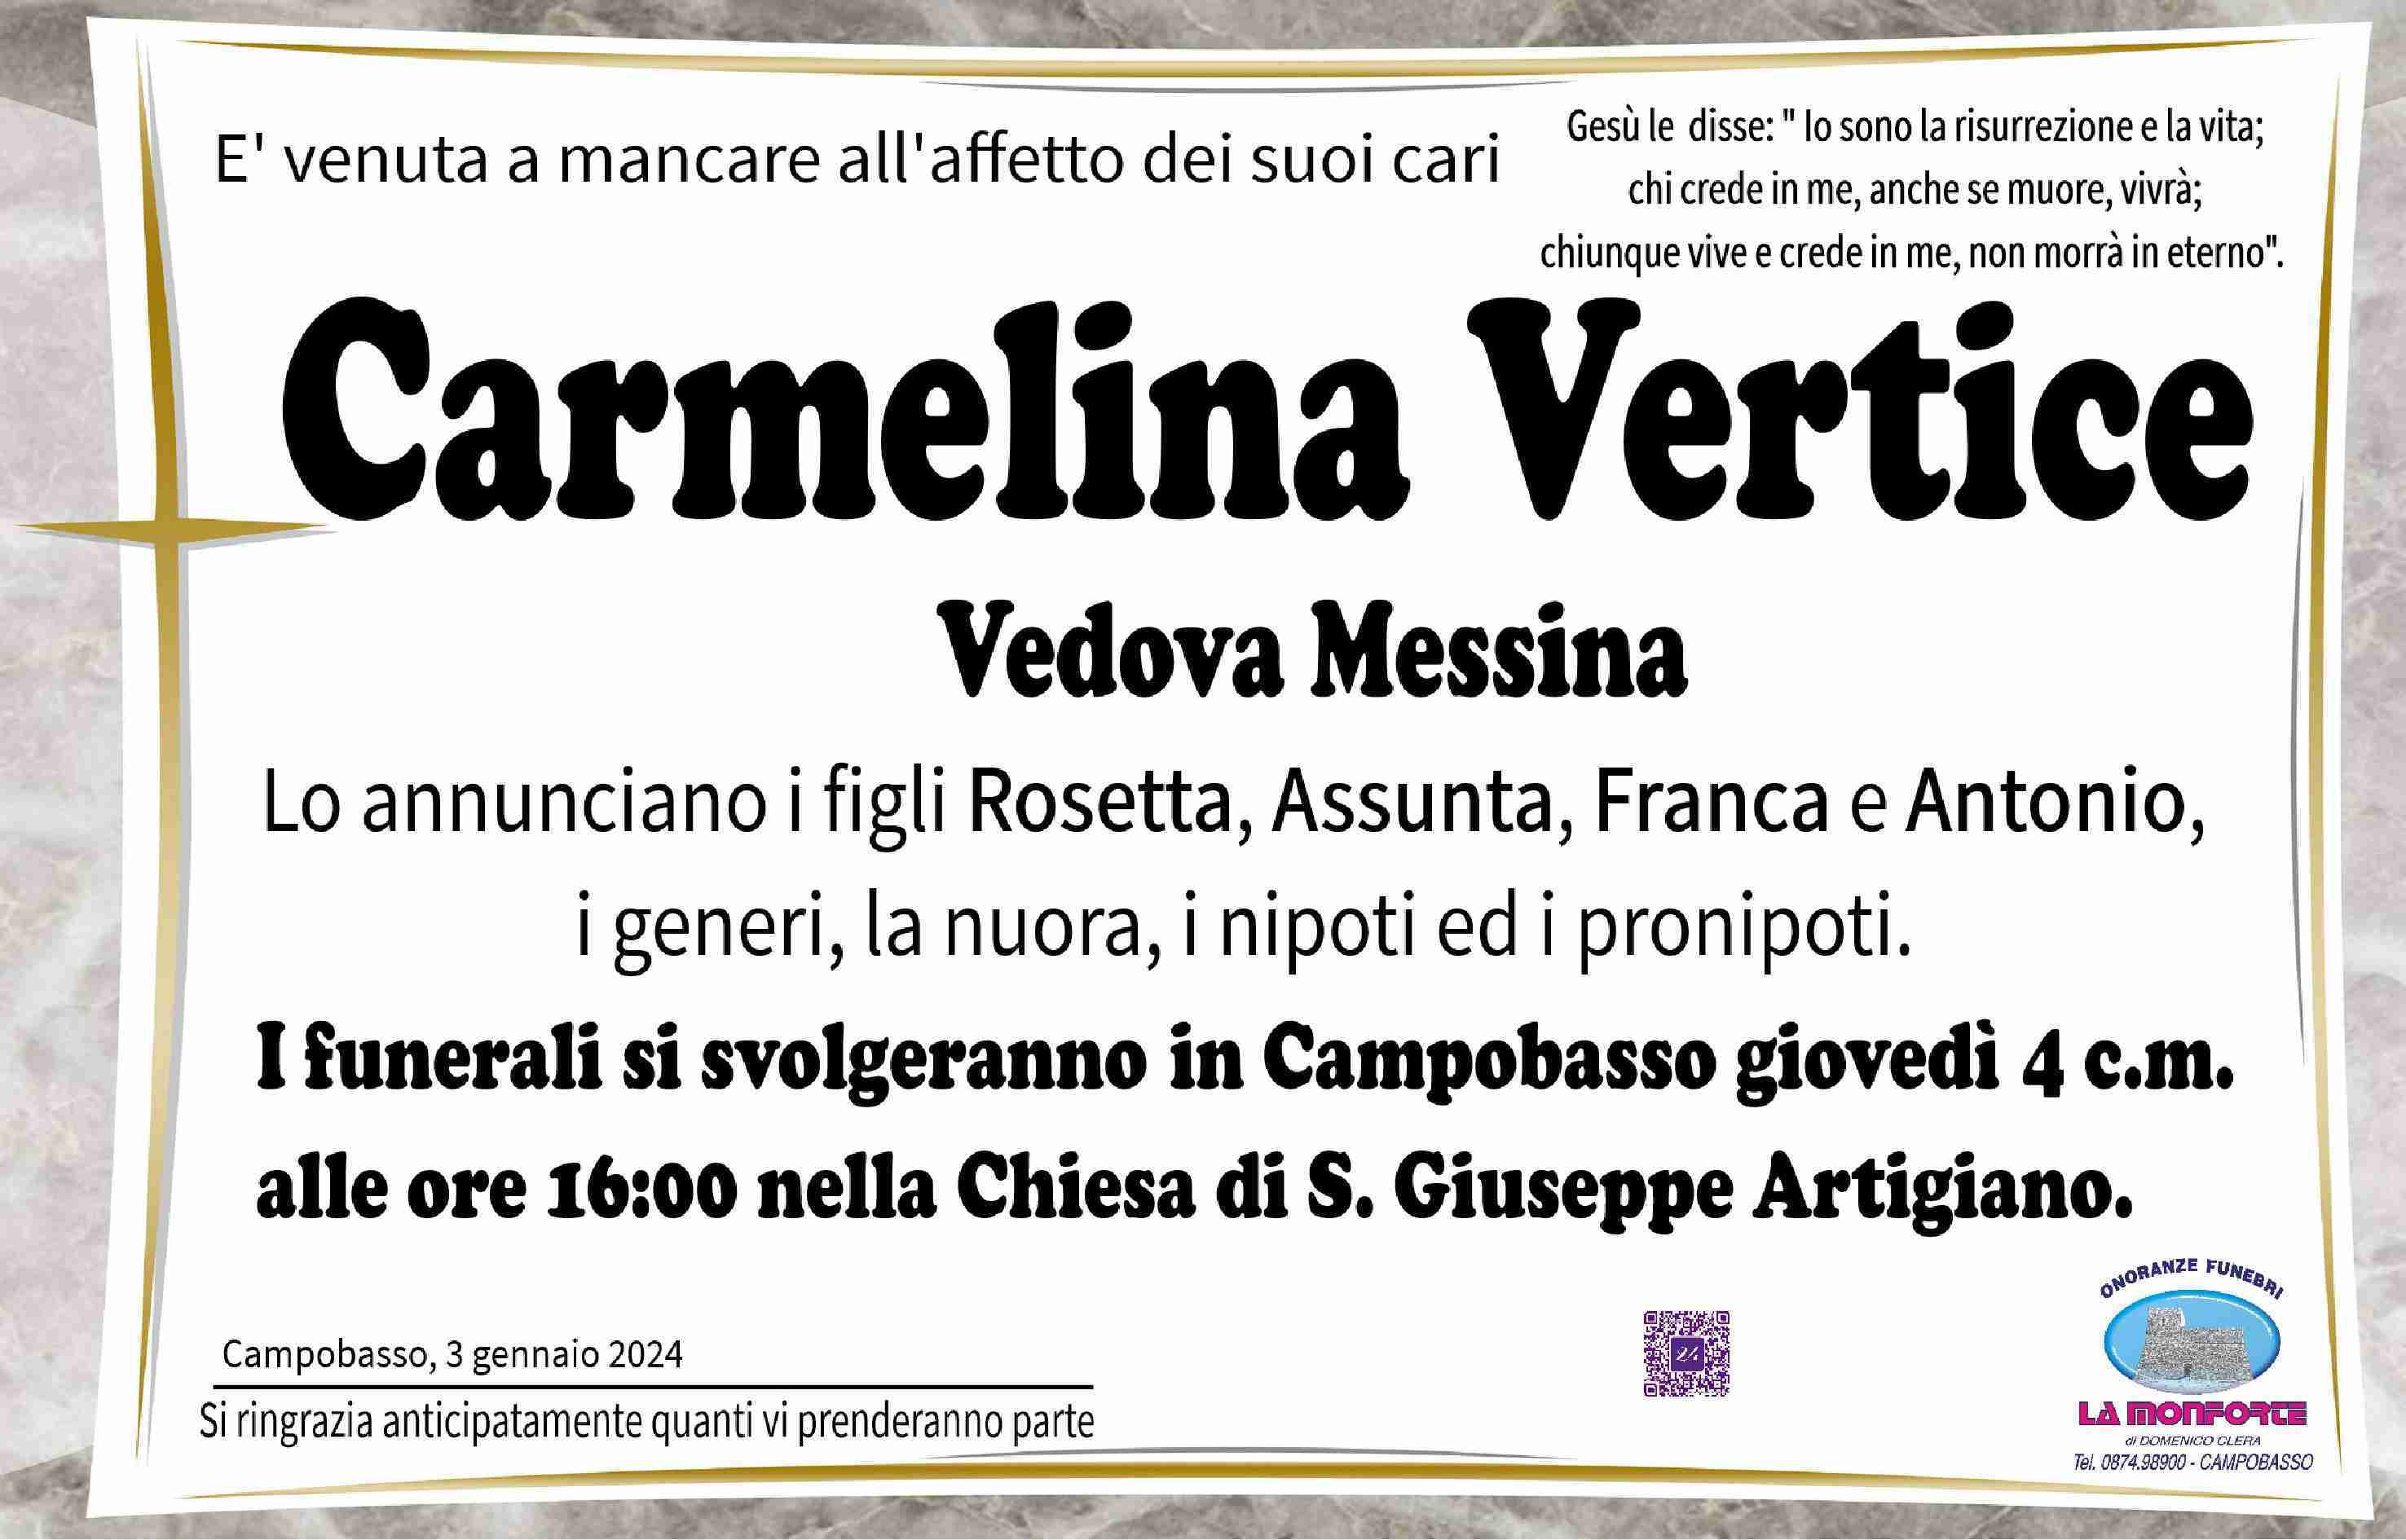 Carmelina Vertice